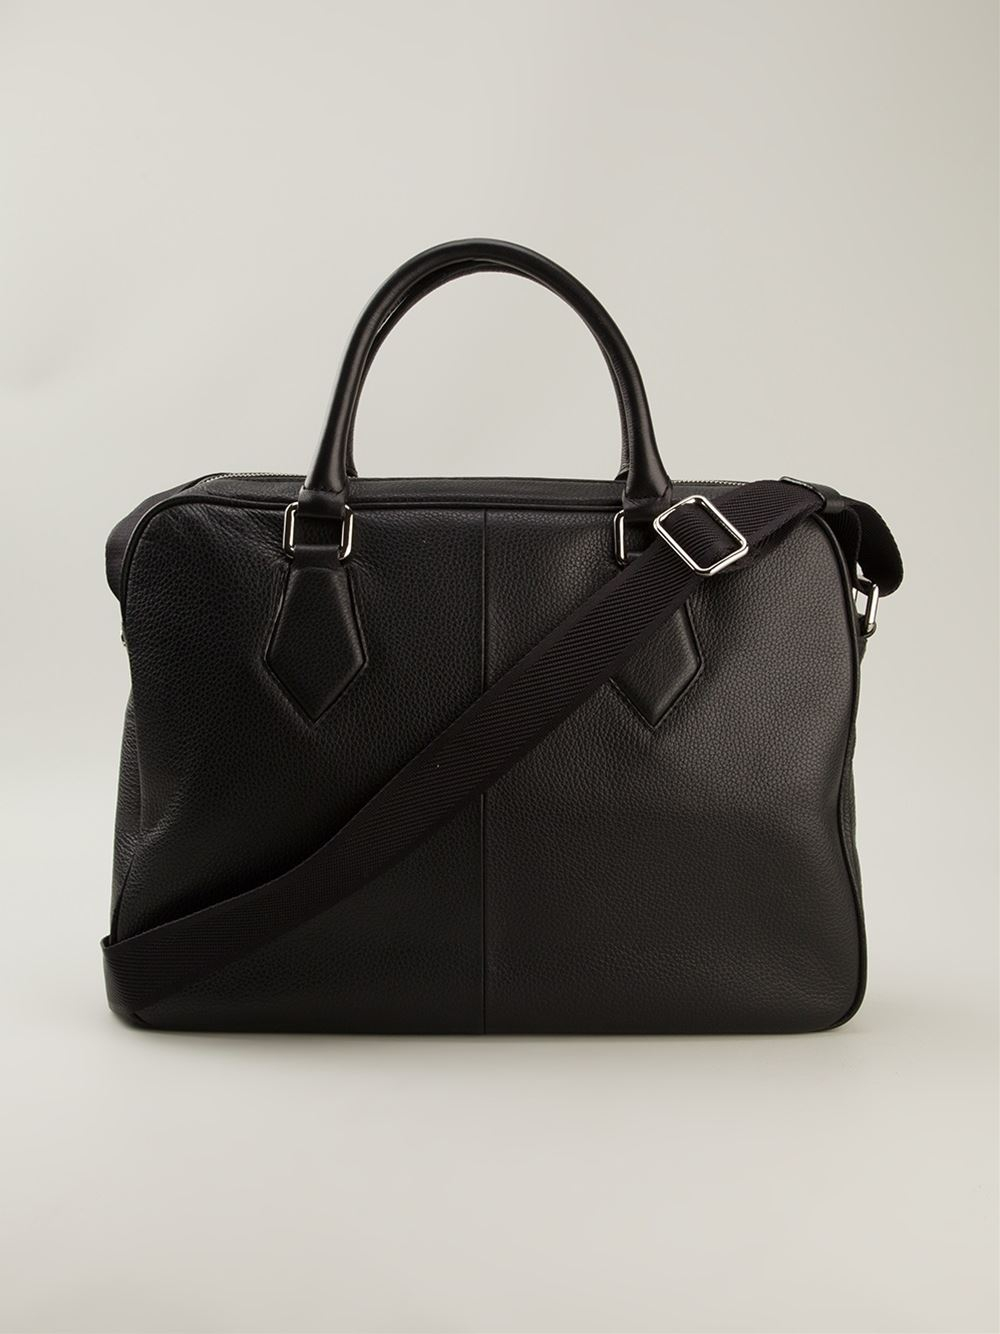 Vivienne Westwood Stamped Logo Laptop Bag in Black for Men - Lyst